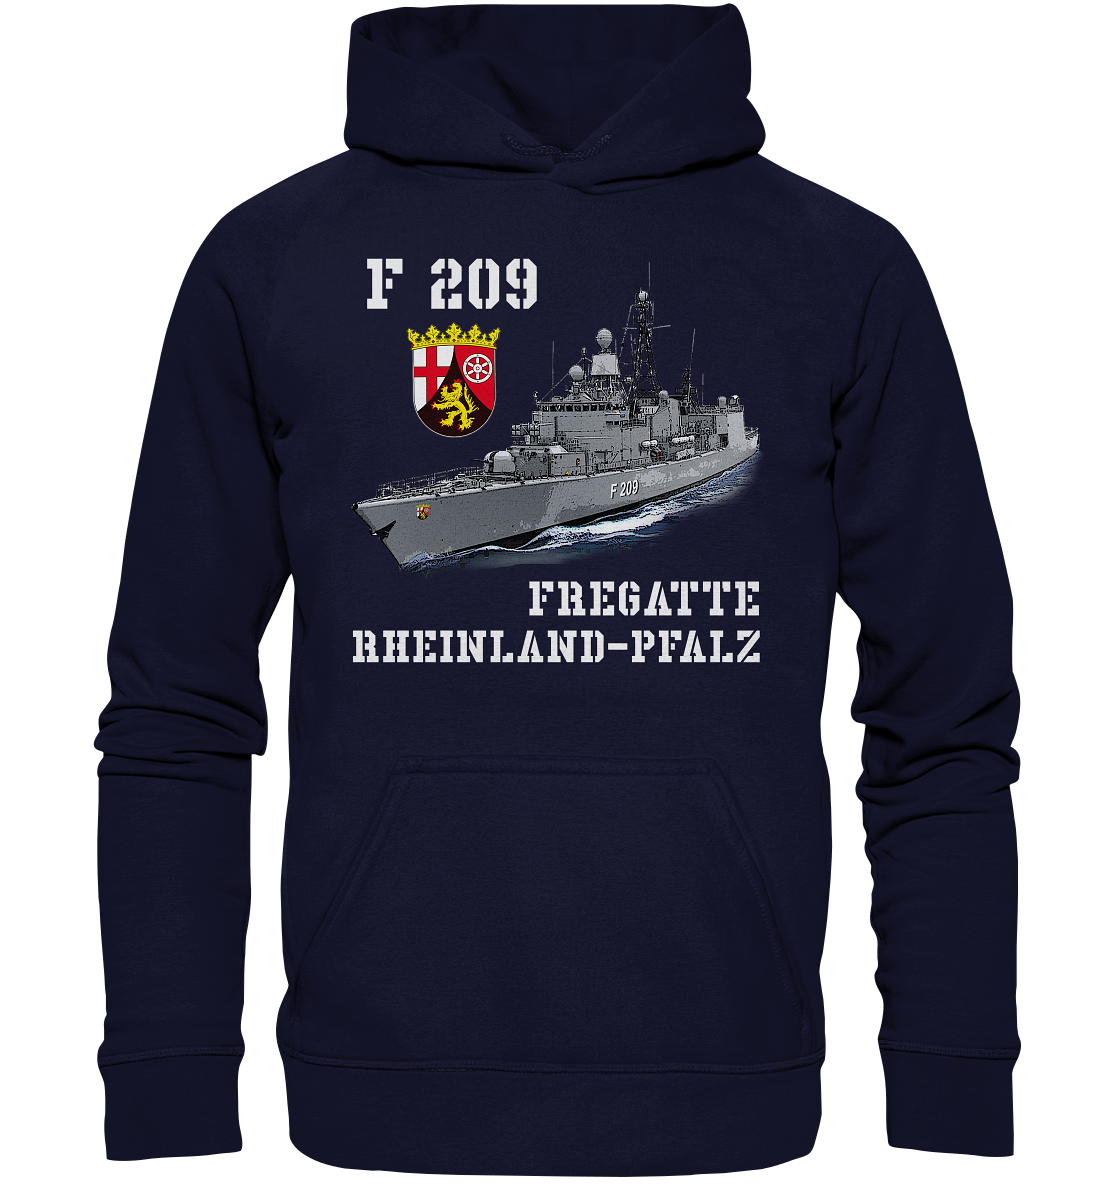 F209 Fregatte RHEINLAND-PFALZ - Basic Unisex Hoodie